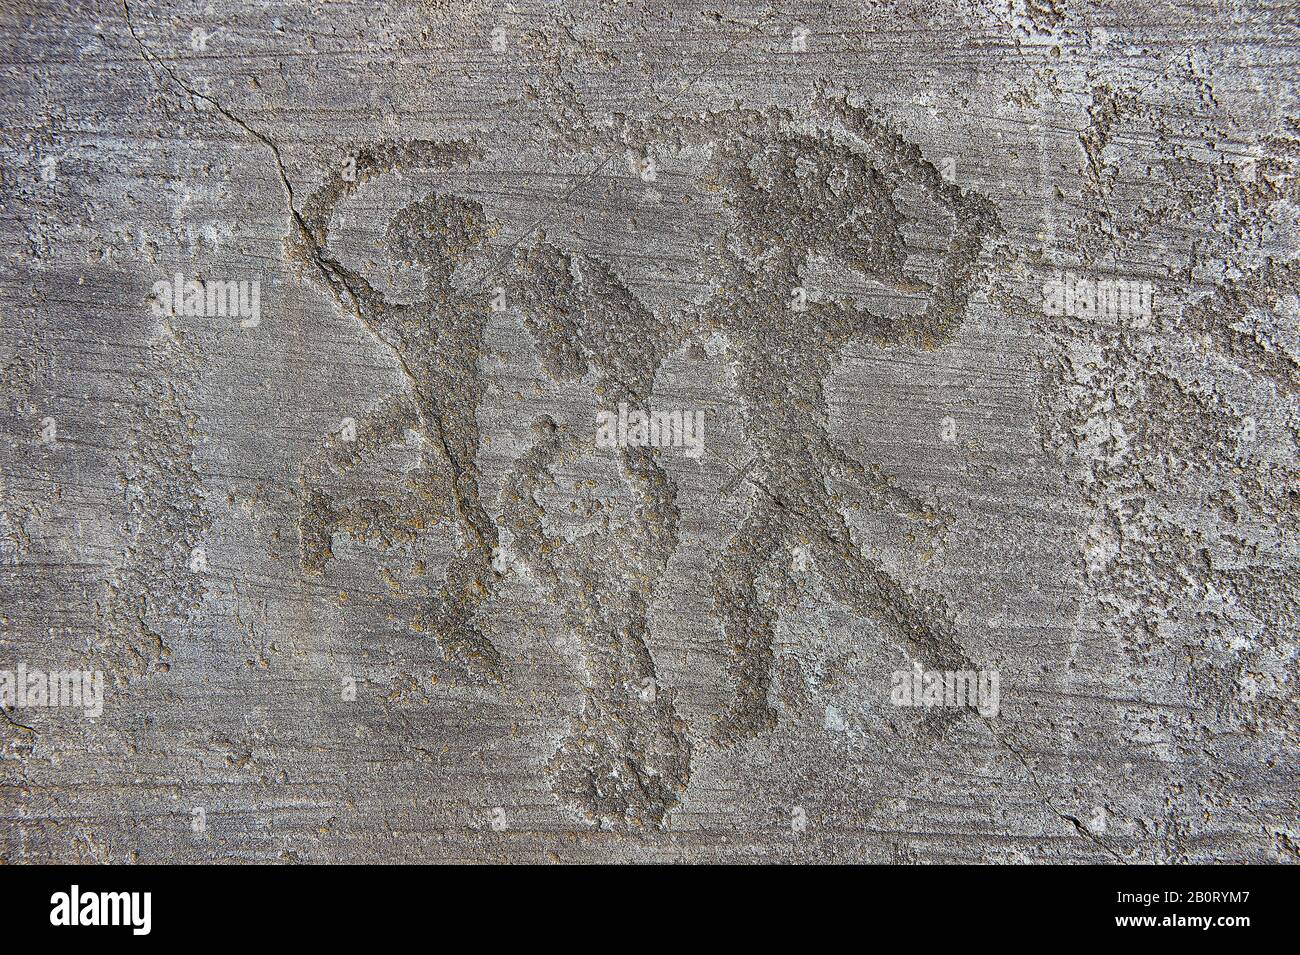 Petroglyph, Felsschnitzerei, von zwei Kriegern, die kämpfen, der rechte hat eine Kopfbedeckung und beide haben Schilde. Vom alten Camunni Peop geschnitzt Stockfoto